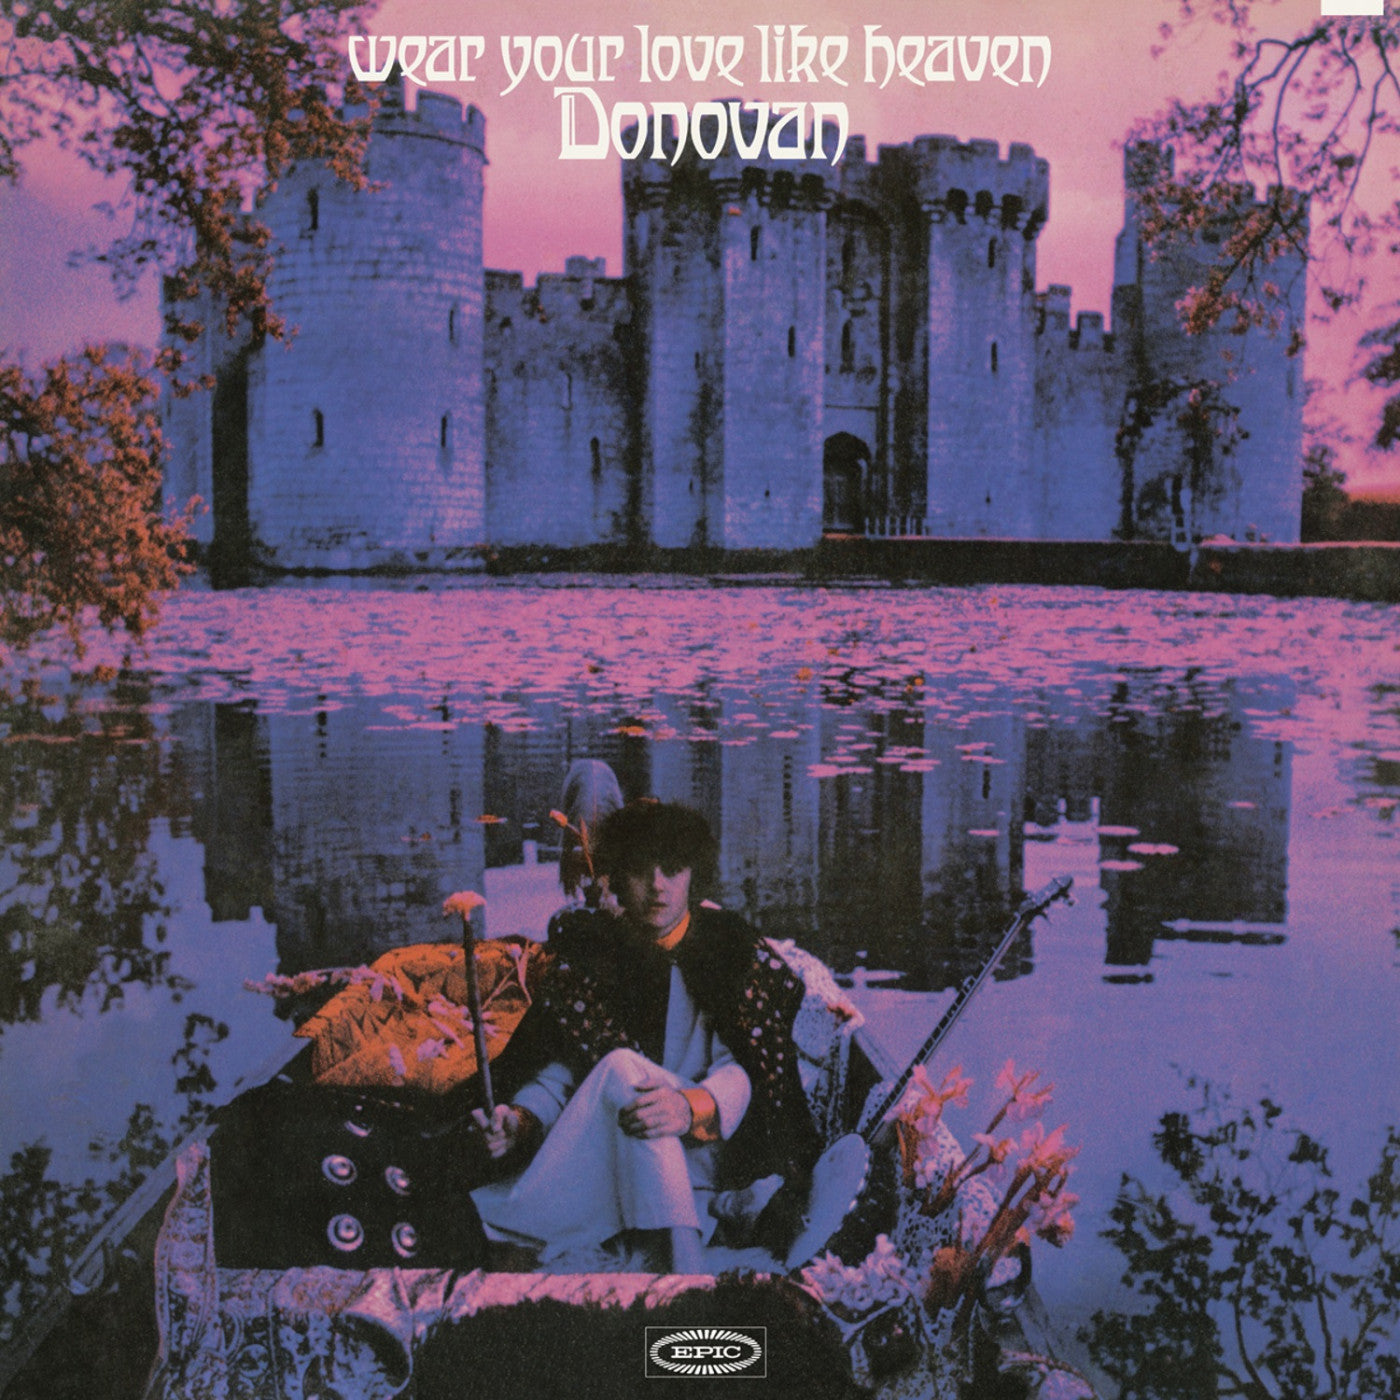 DONOVAN 'WEAR YOUR LOVE LIKE HEAVEN' LP (Purple Vinyl)